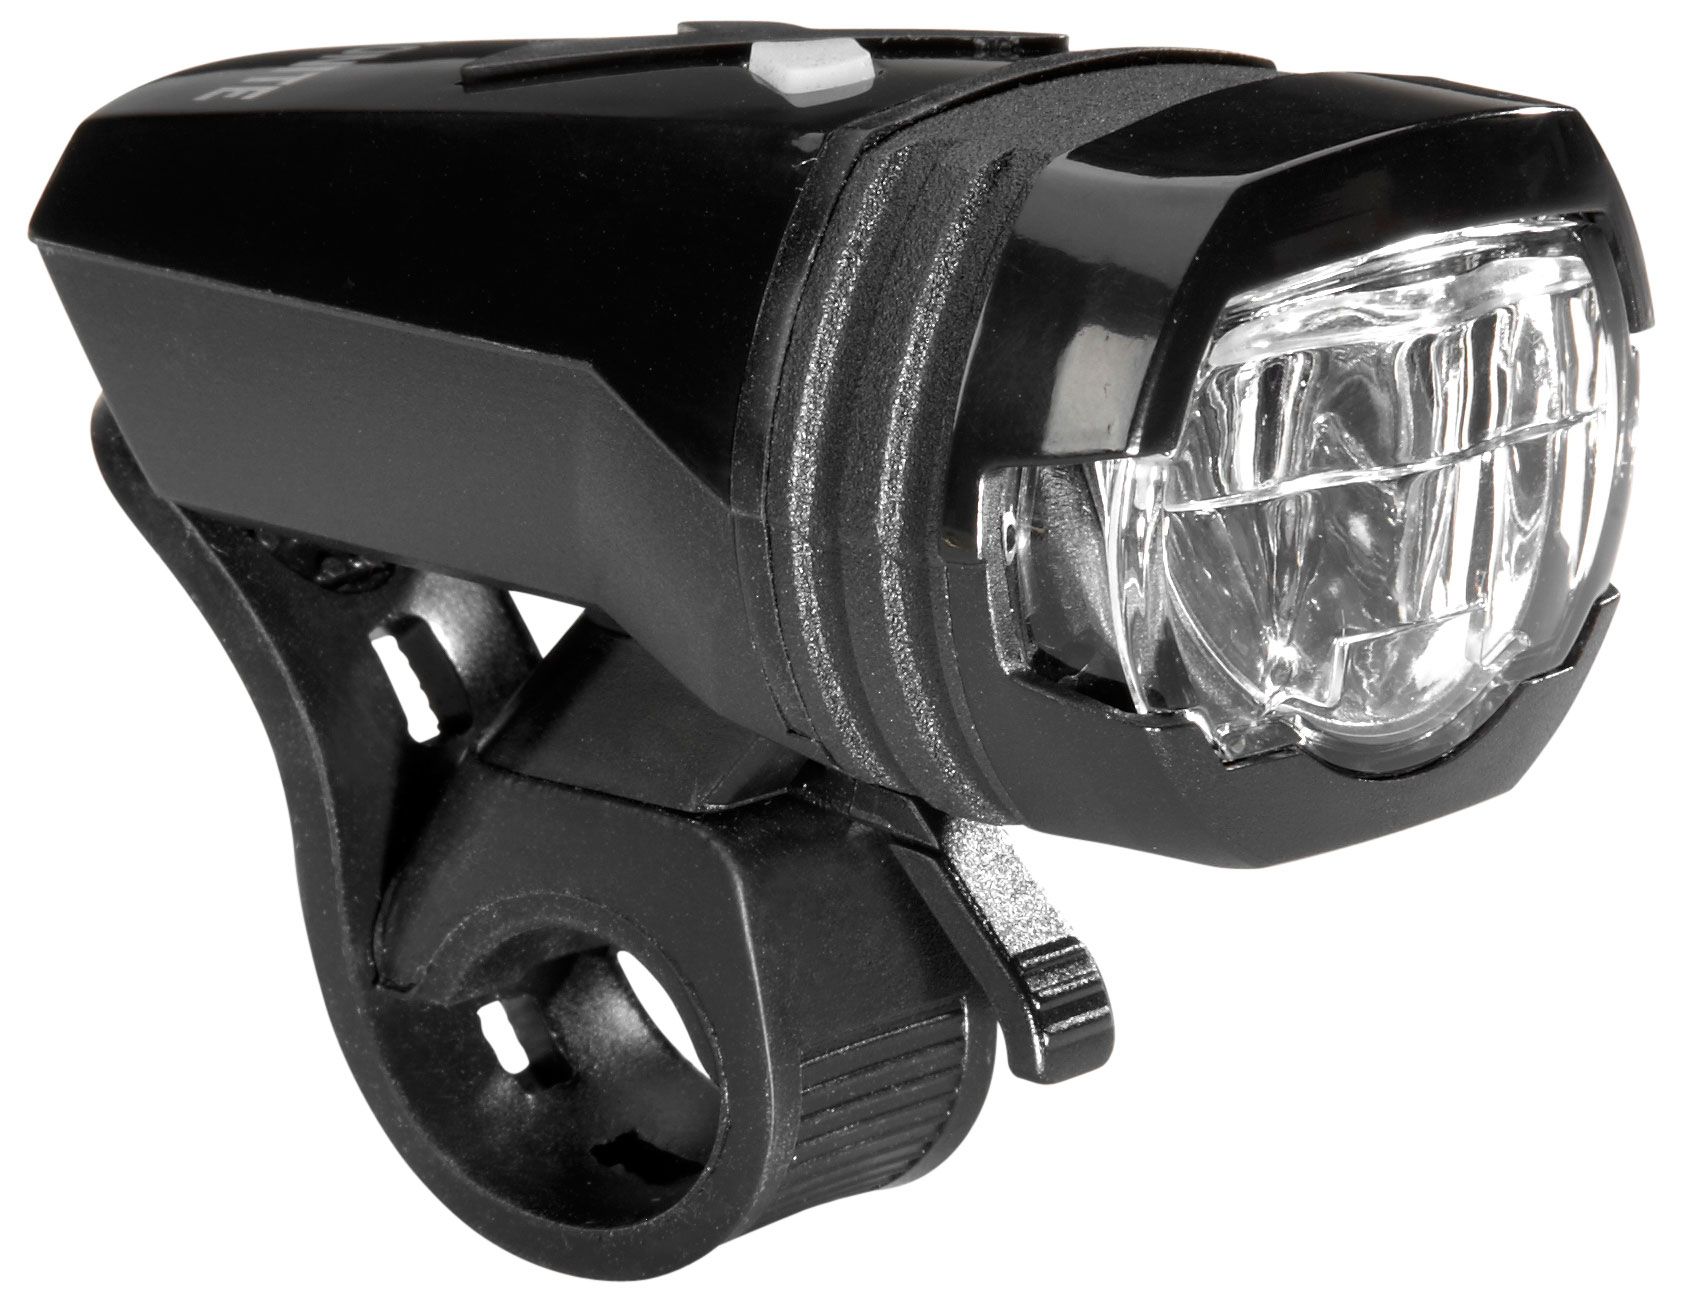  Передний фонарь для велосипеда Kryptonite Alley F-275 LED USB-RLT